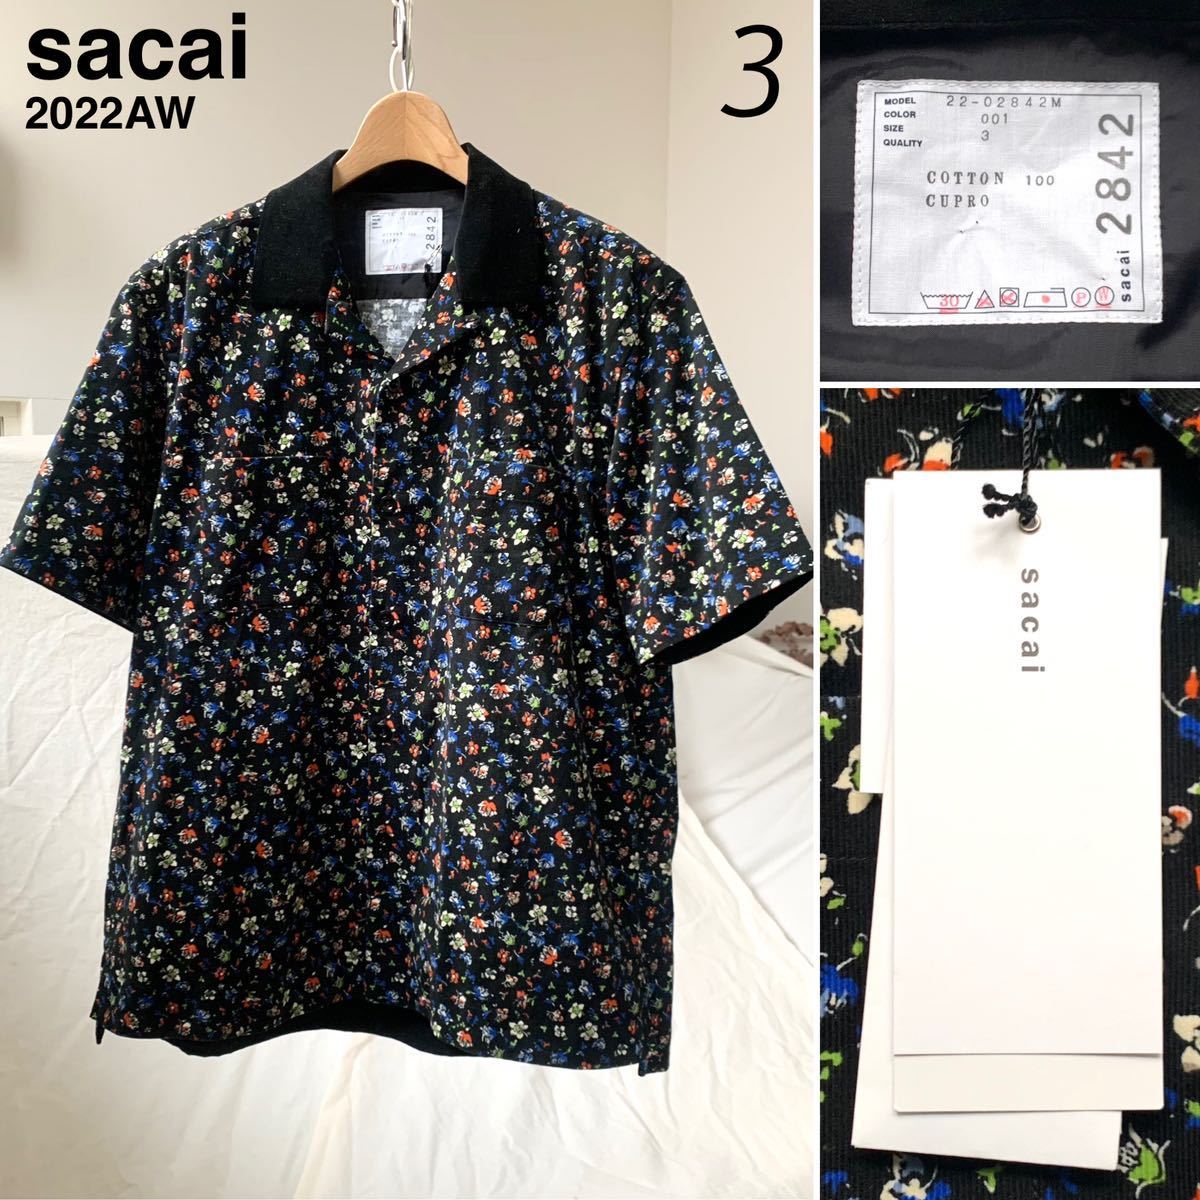 新品 2022AW sacai サカイ フローラルプリント ショートスリーブ オープンカラー シャツ 3 黒 ブラック メンズ 小花柄 半袖シャツ